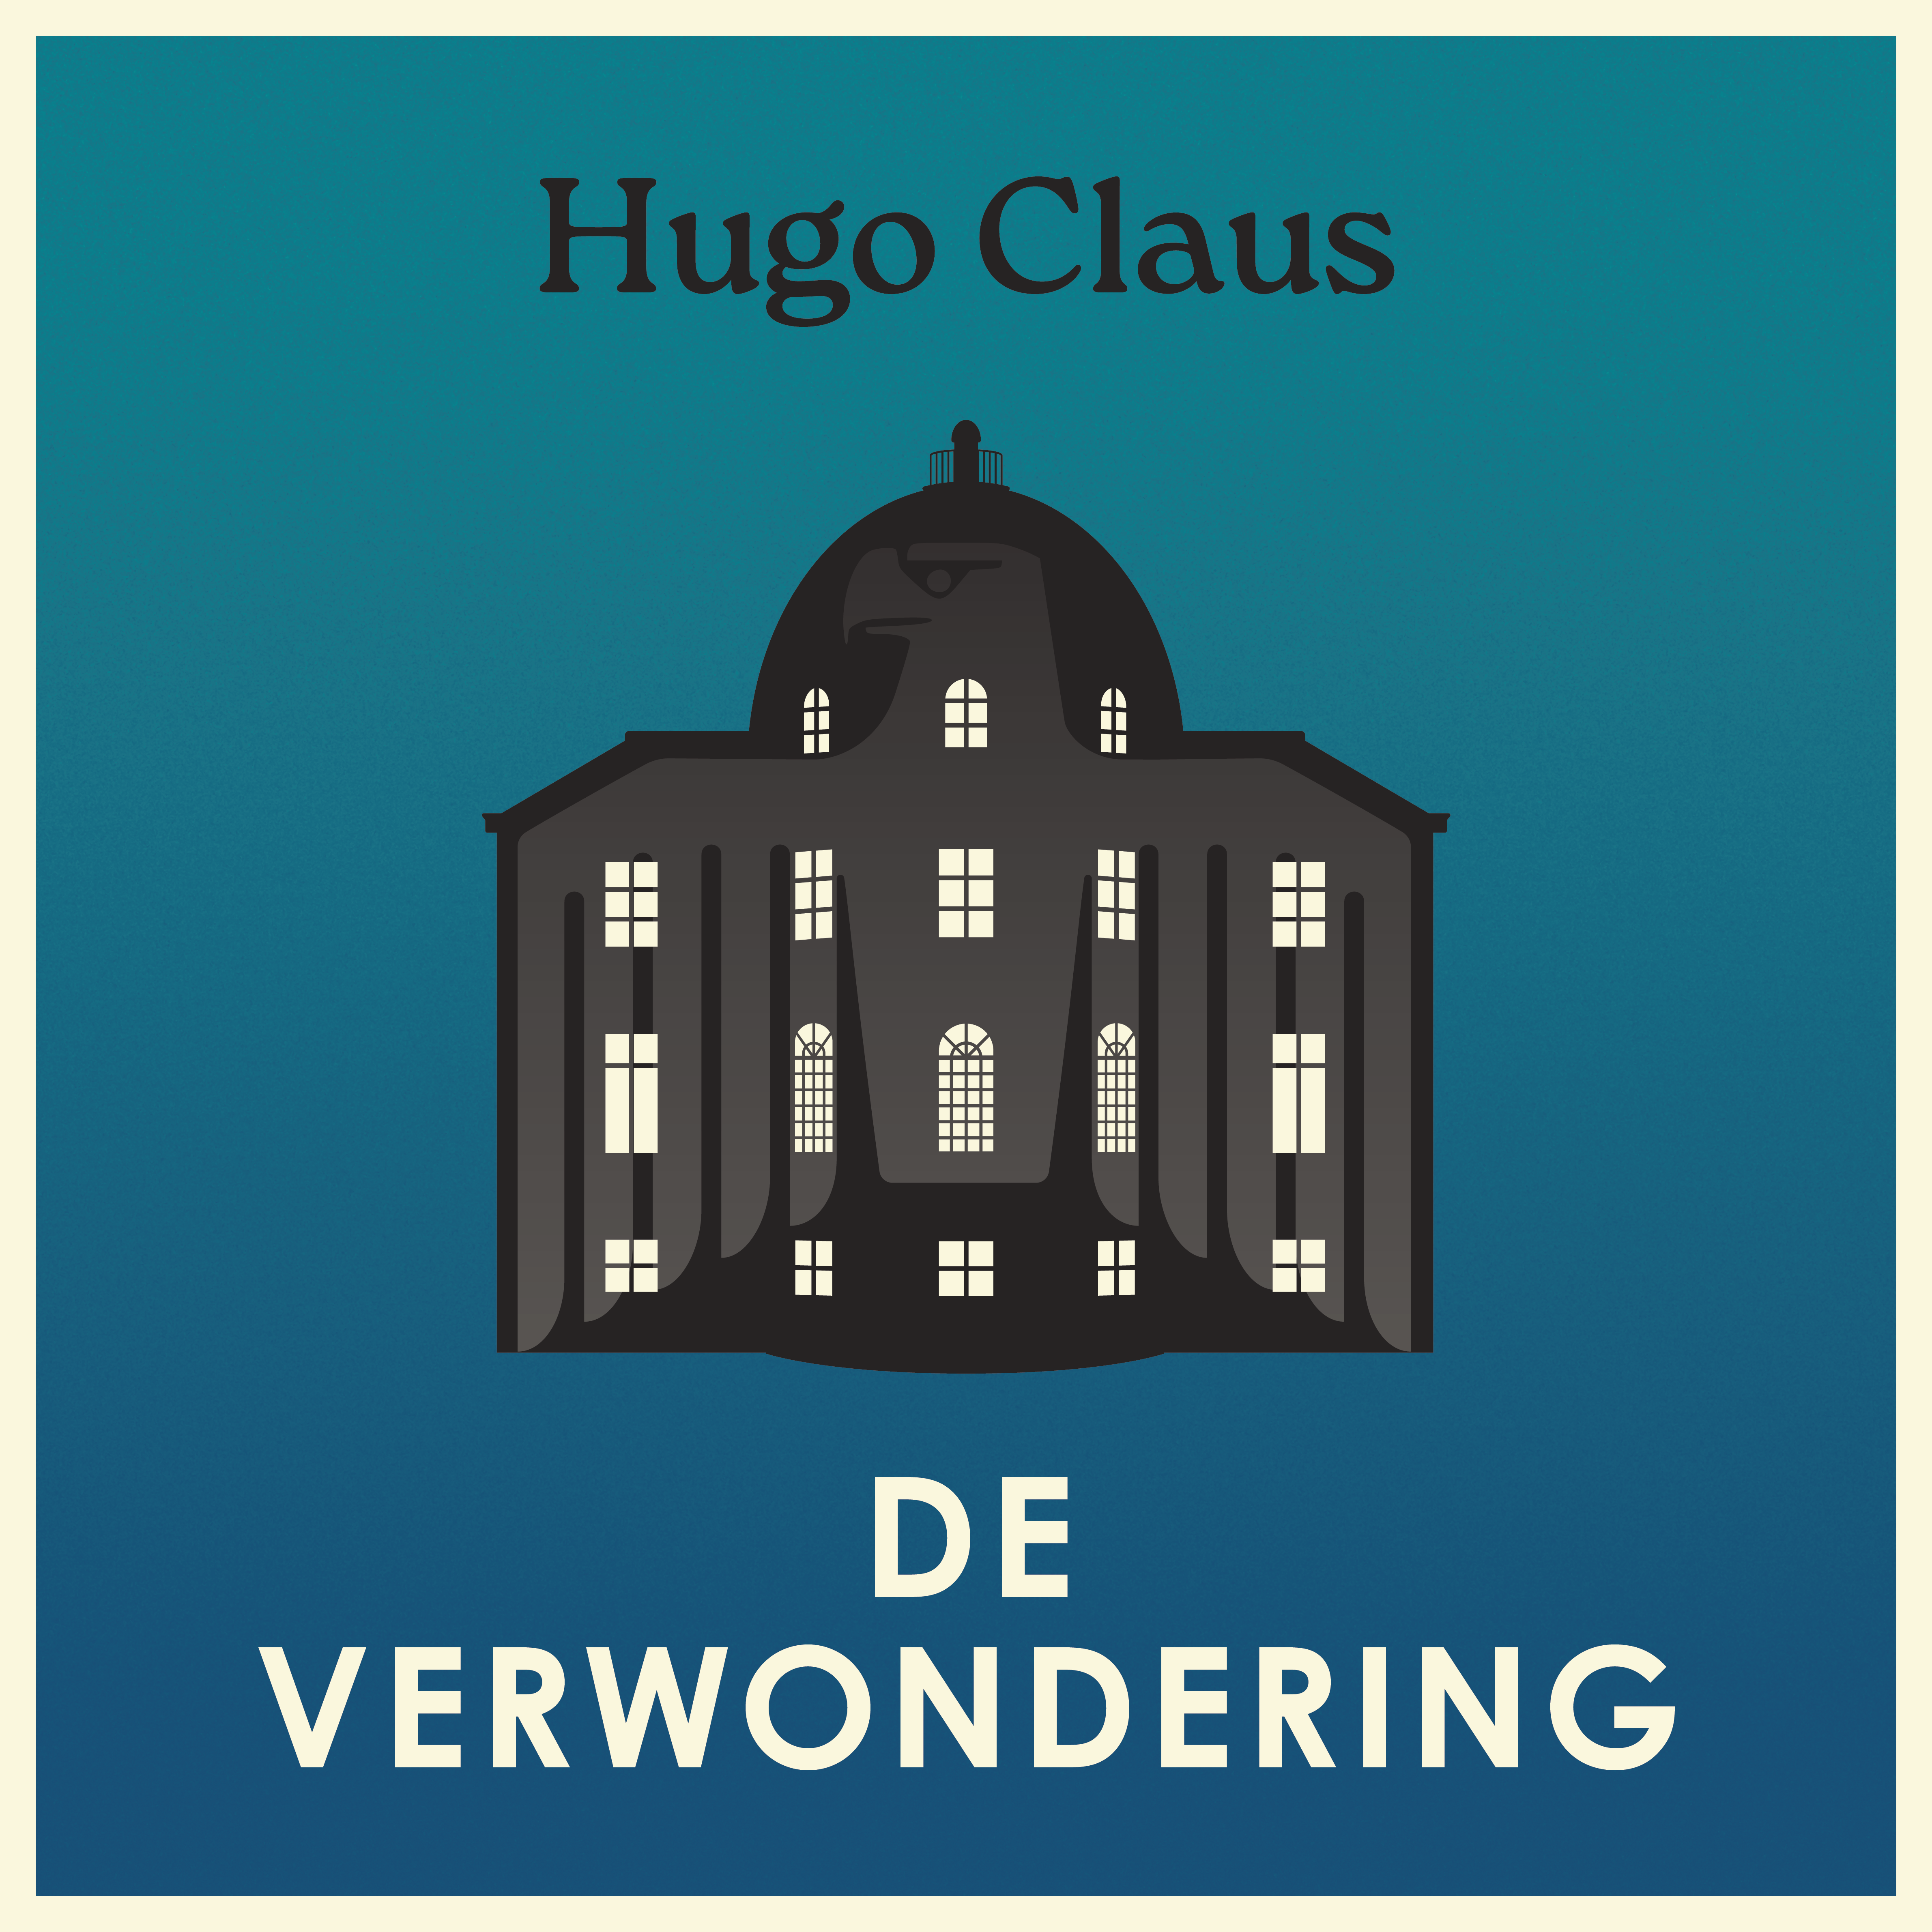 Hugo Claus - De verwondering [square]